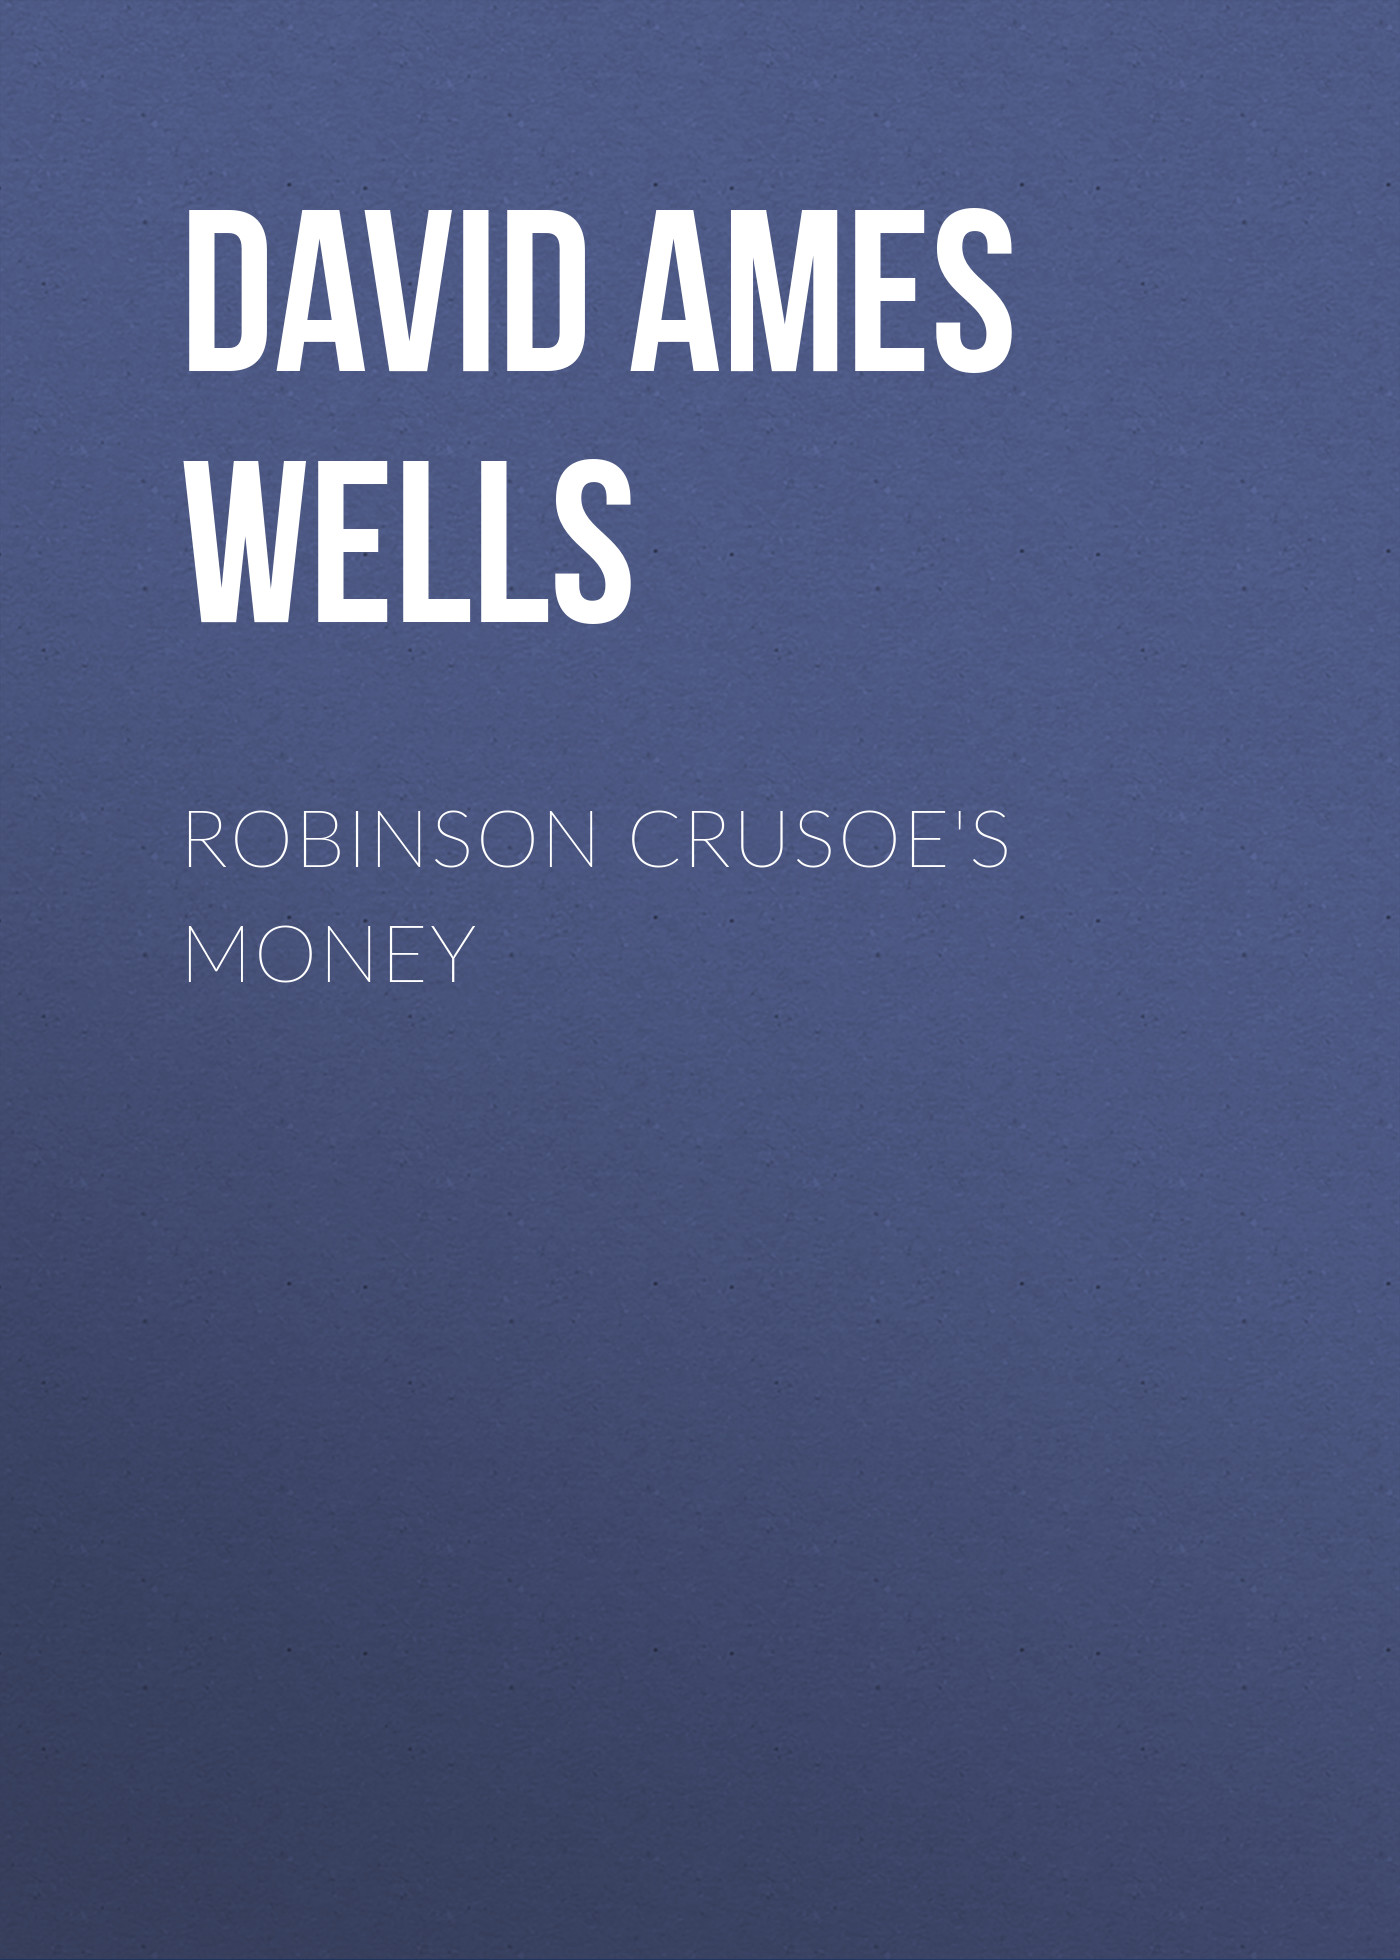 Книга Robinson Crusoe's Money из серии , созданная David Ames Wells, может относится к жанру О бизнесе популярно, Зарубежная образовательная литература. Стоимость электронной книги Robinson Crusoe's Money с идентификатором 34336530 составляет 0 руб.